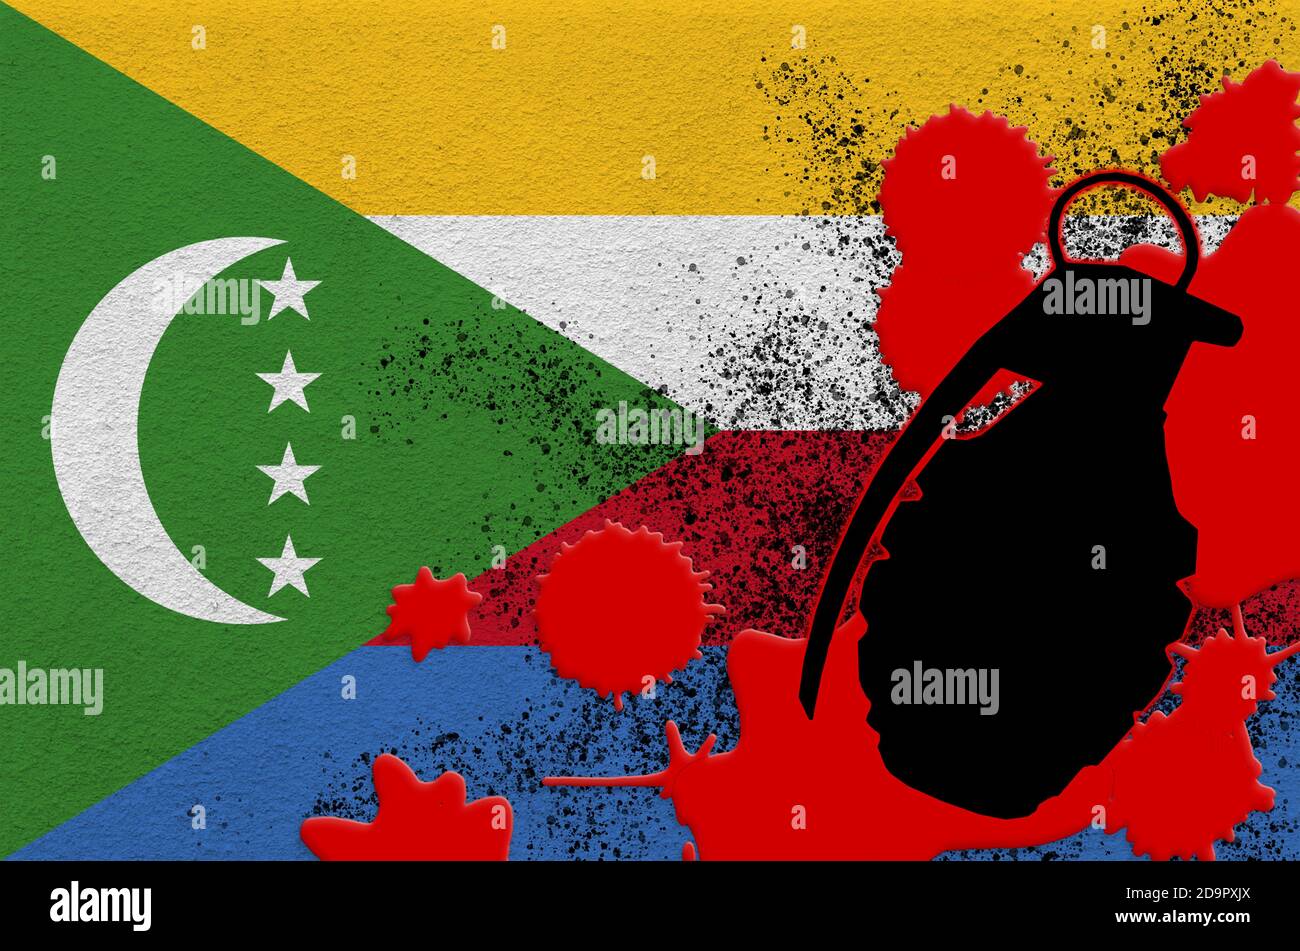 Drapeau des Comores et grenade à frag MK2 dans du sang rouge. Concept d'attaque terroriste ou d'opérations militaires avec un résultat mortel. Arme projectile dangereuse usag Banque D'Images